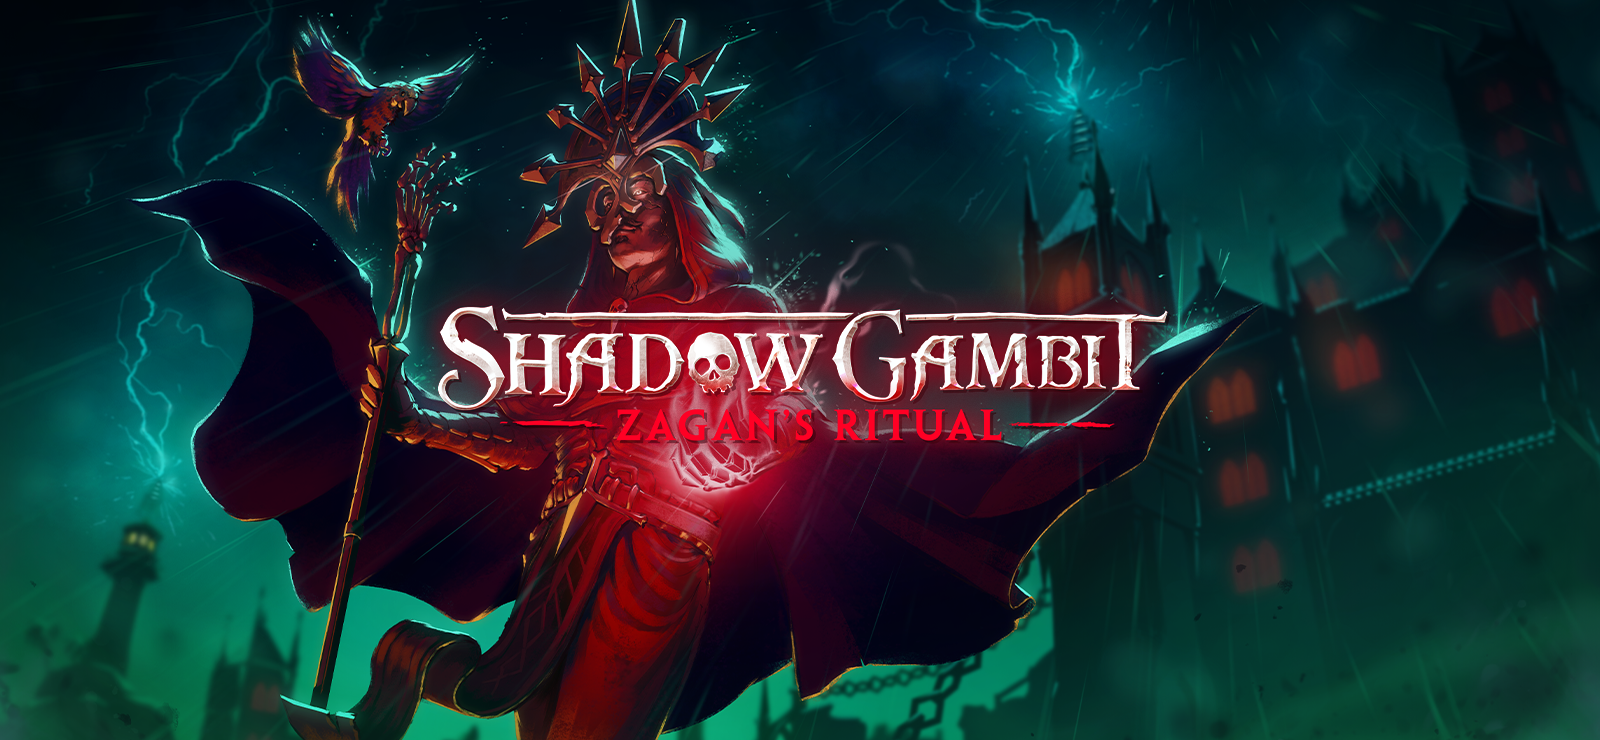 Shadow Gambit: Zagan’s Ritual